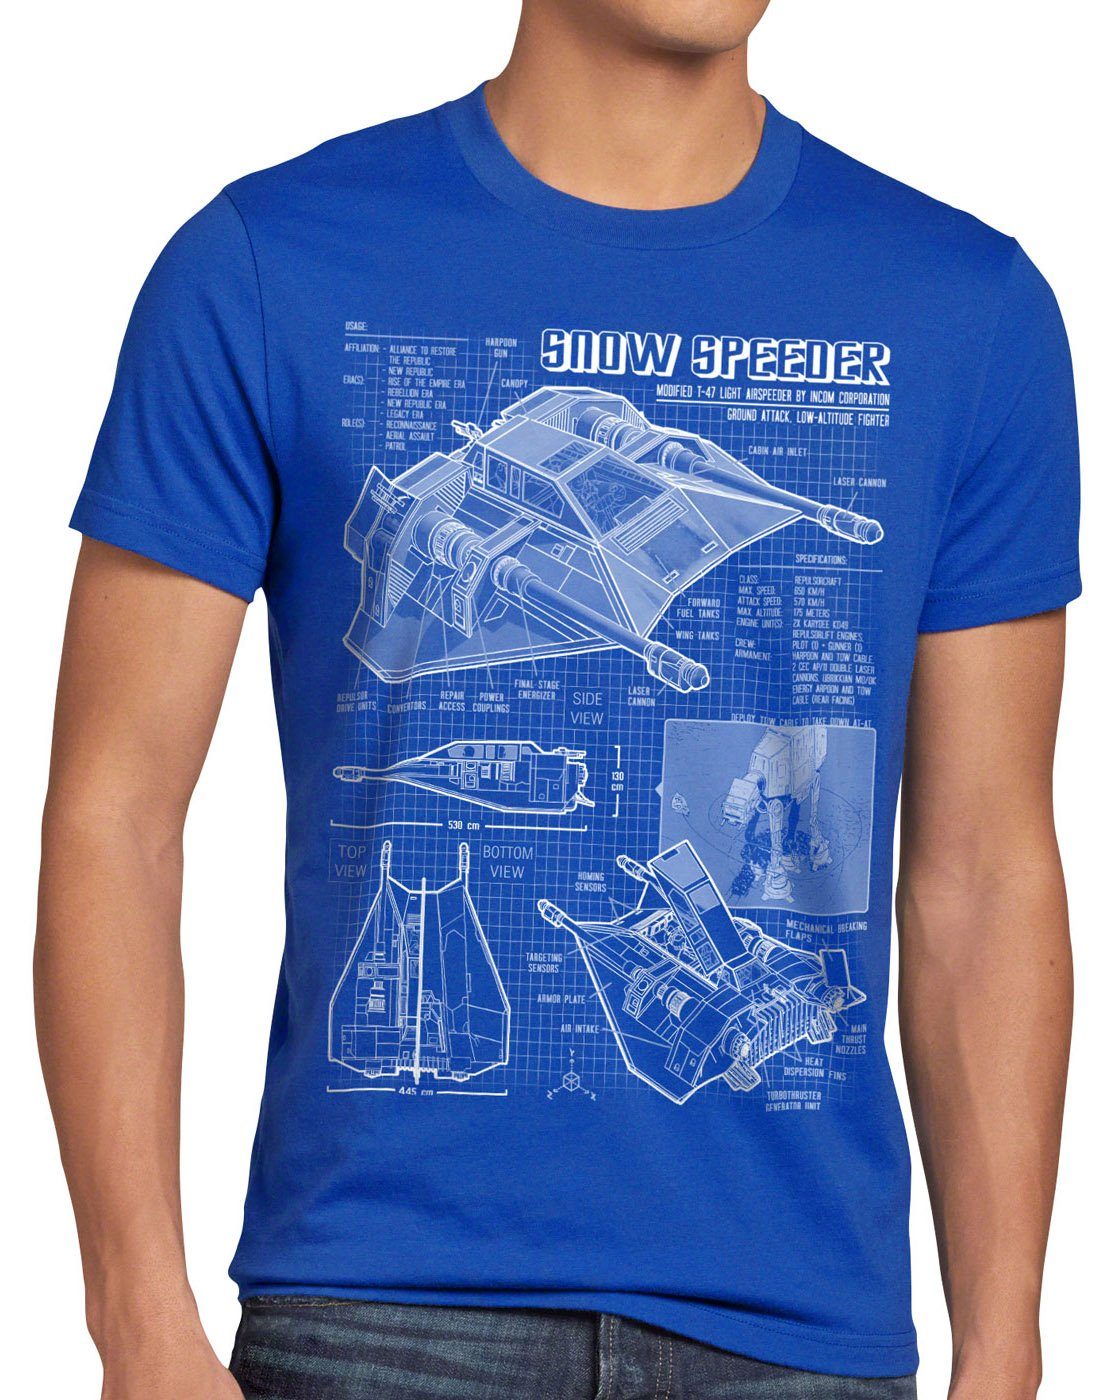 Snow blau air Herren T-47 Speeder hoth star der imperium sterne wars Print-Shirt style3 T-Shirt krieg